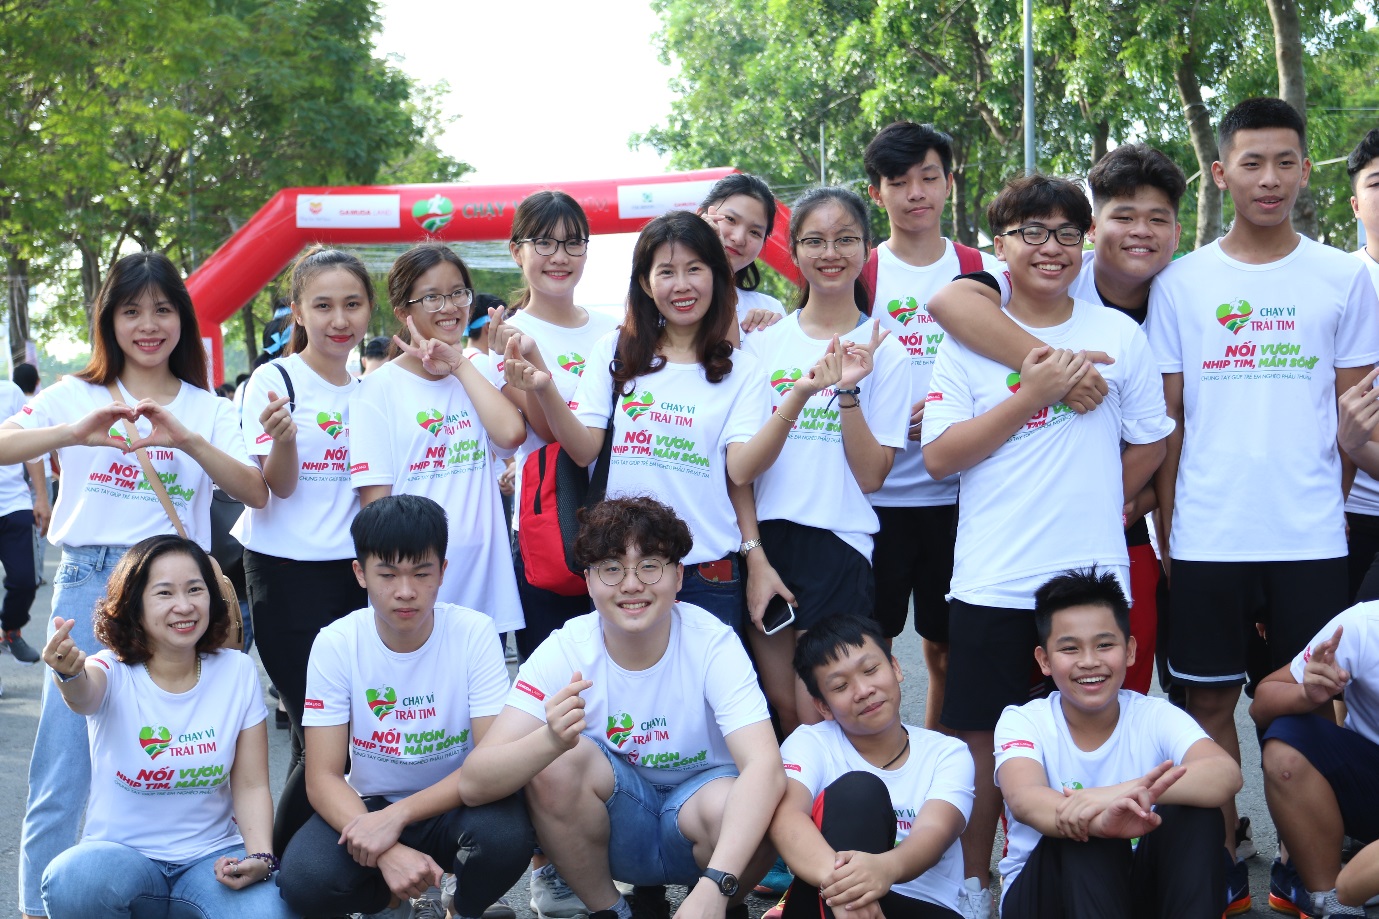 Trường Quốc tế Á Châu 3 năm liên tiếp Chạy vì trái tim